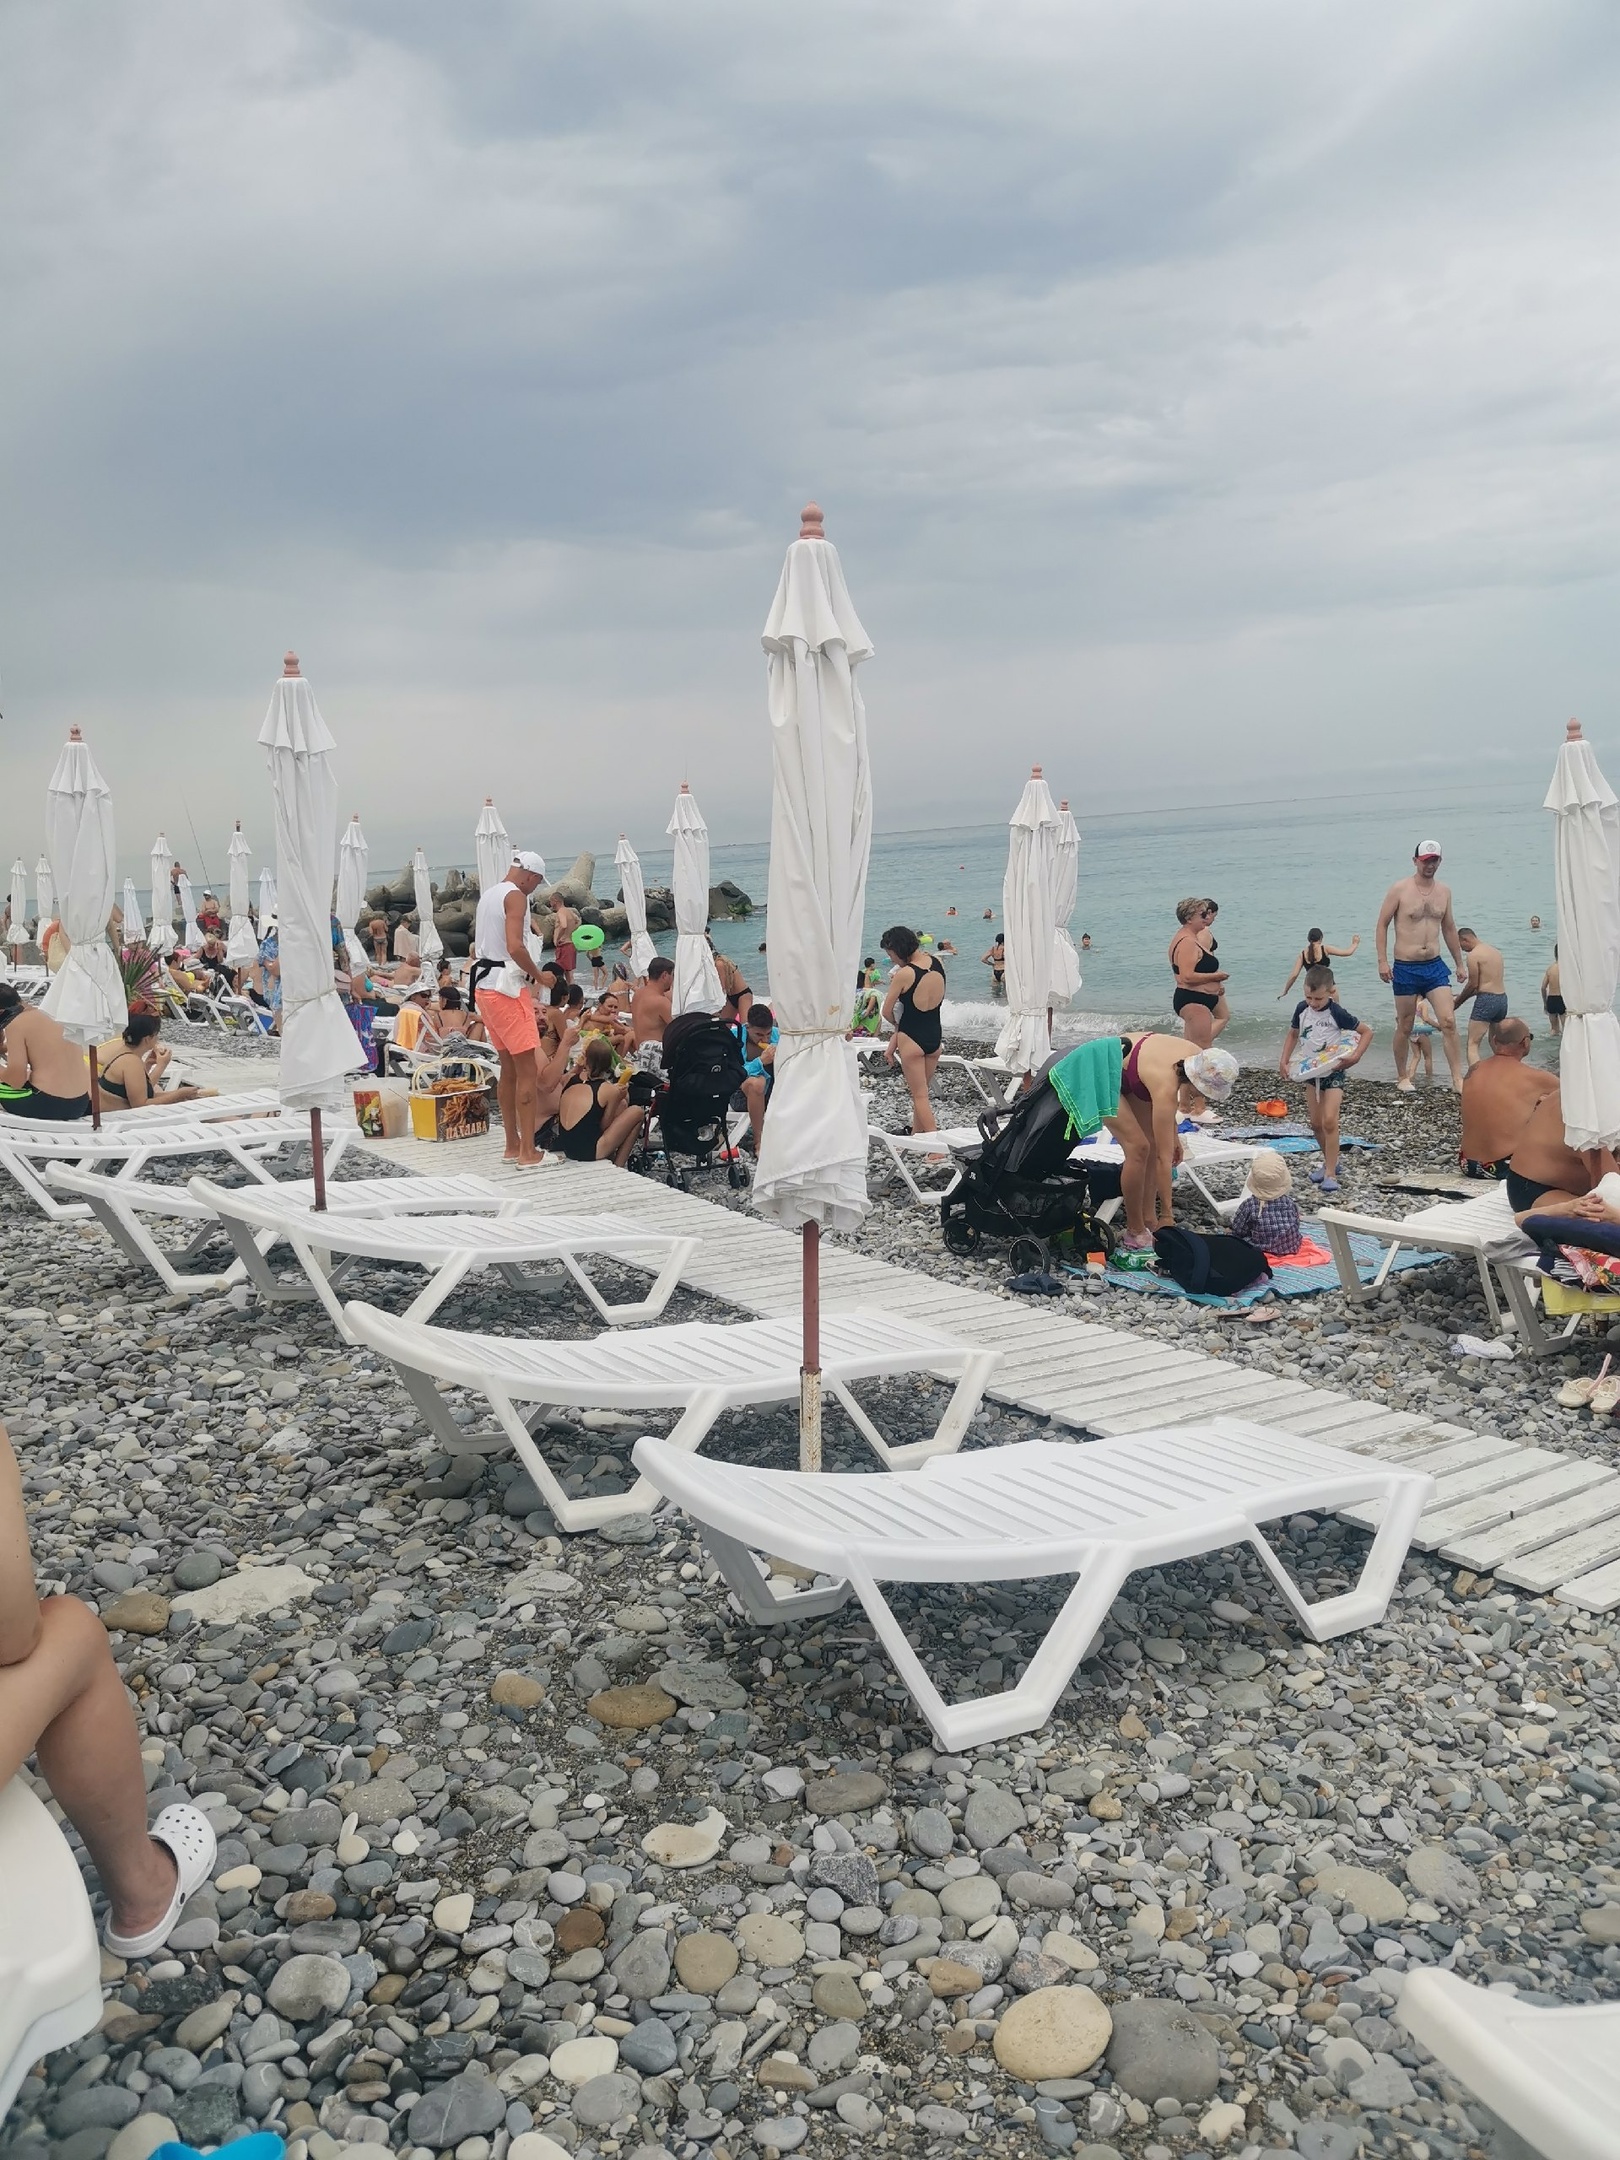 Туристы, вернувшиеся с Черного моря, массово подают в суд: новая беда на море испортила отдых — ничего уже не выручало